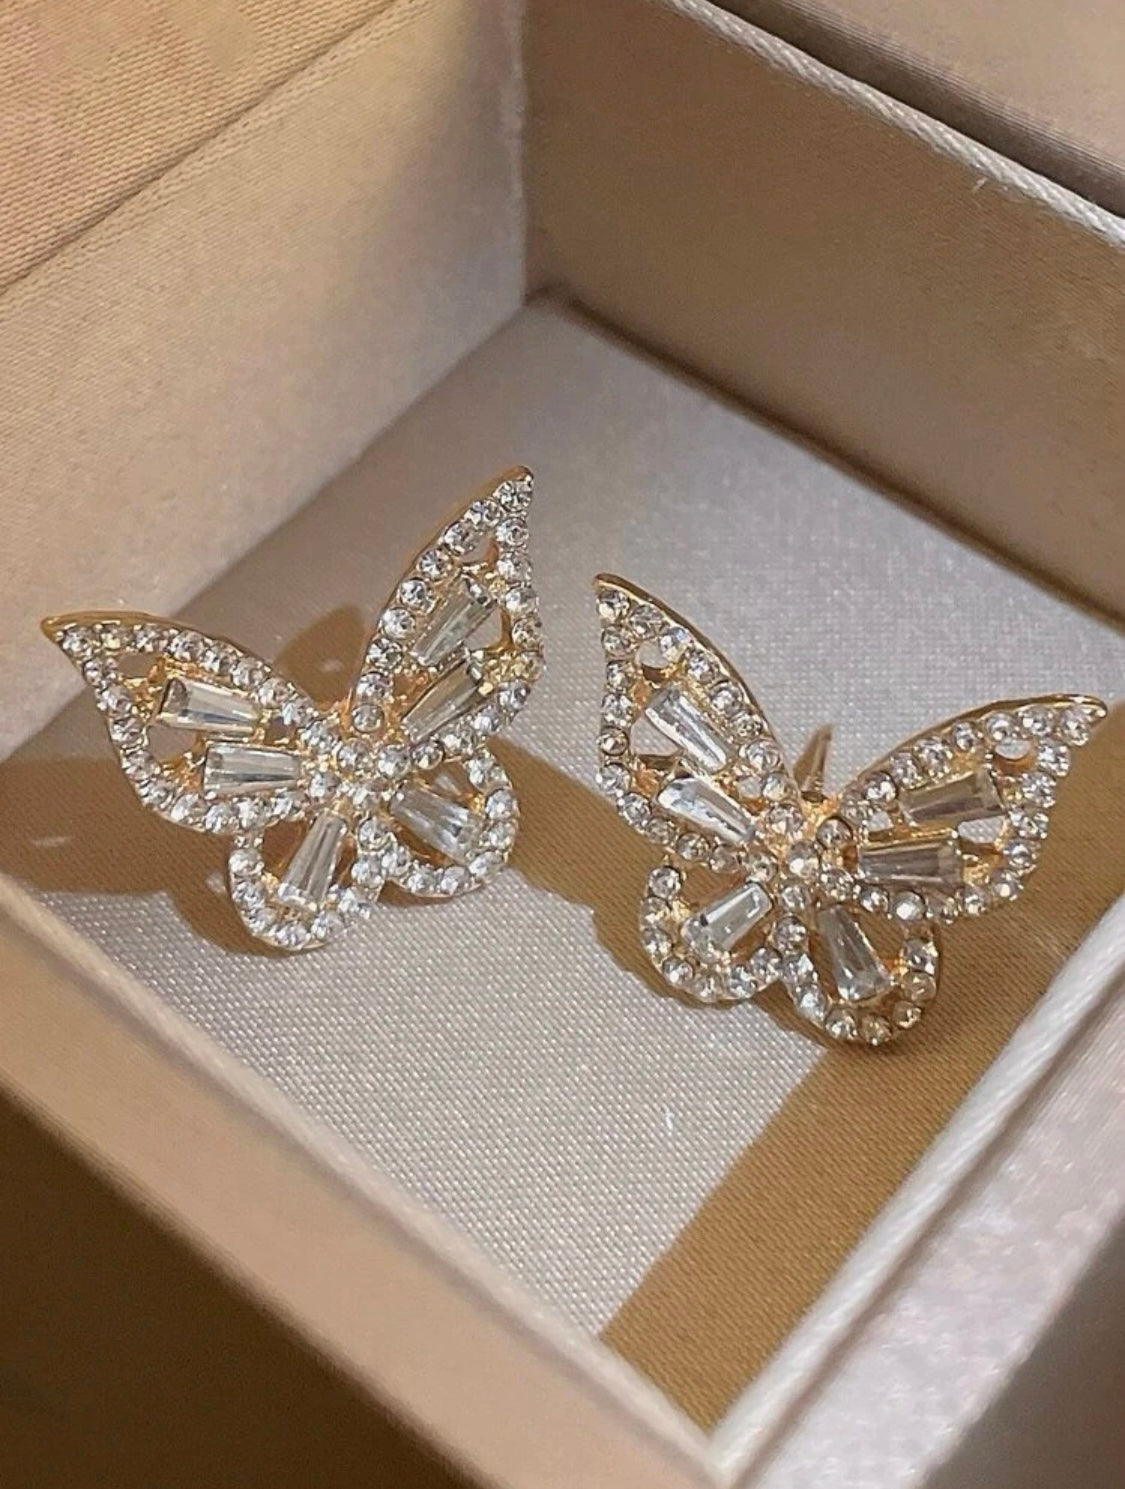 Born to Fly Butterfly Earrings